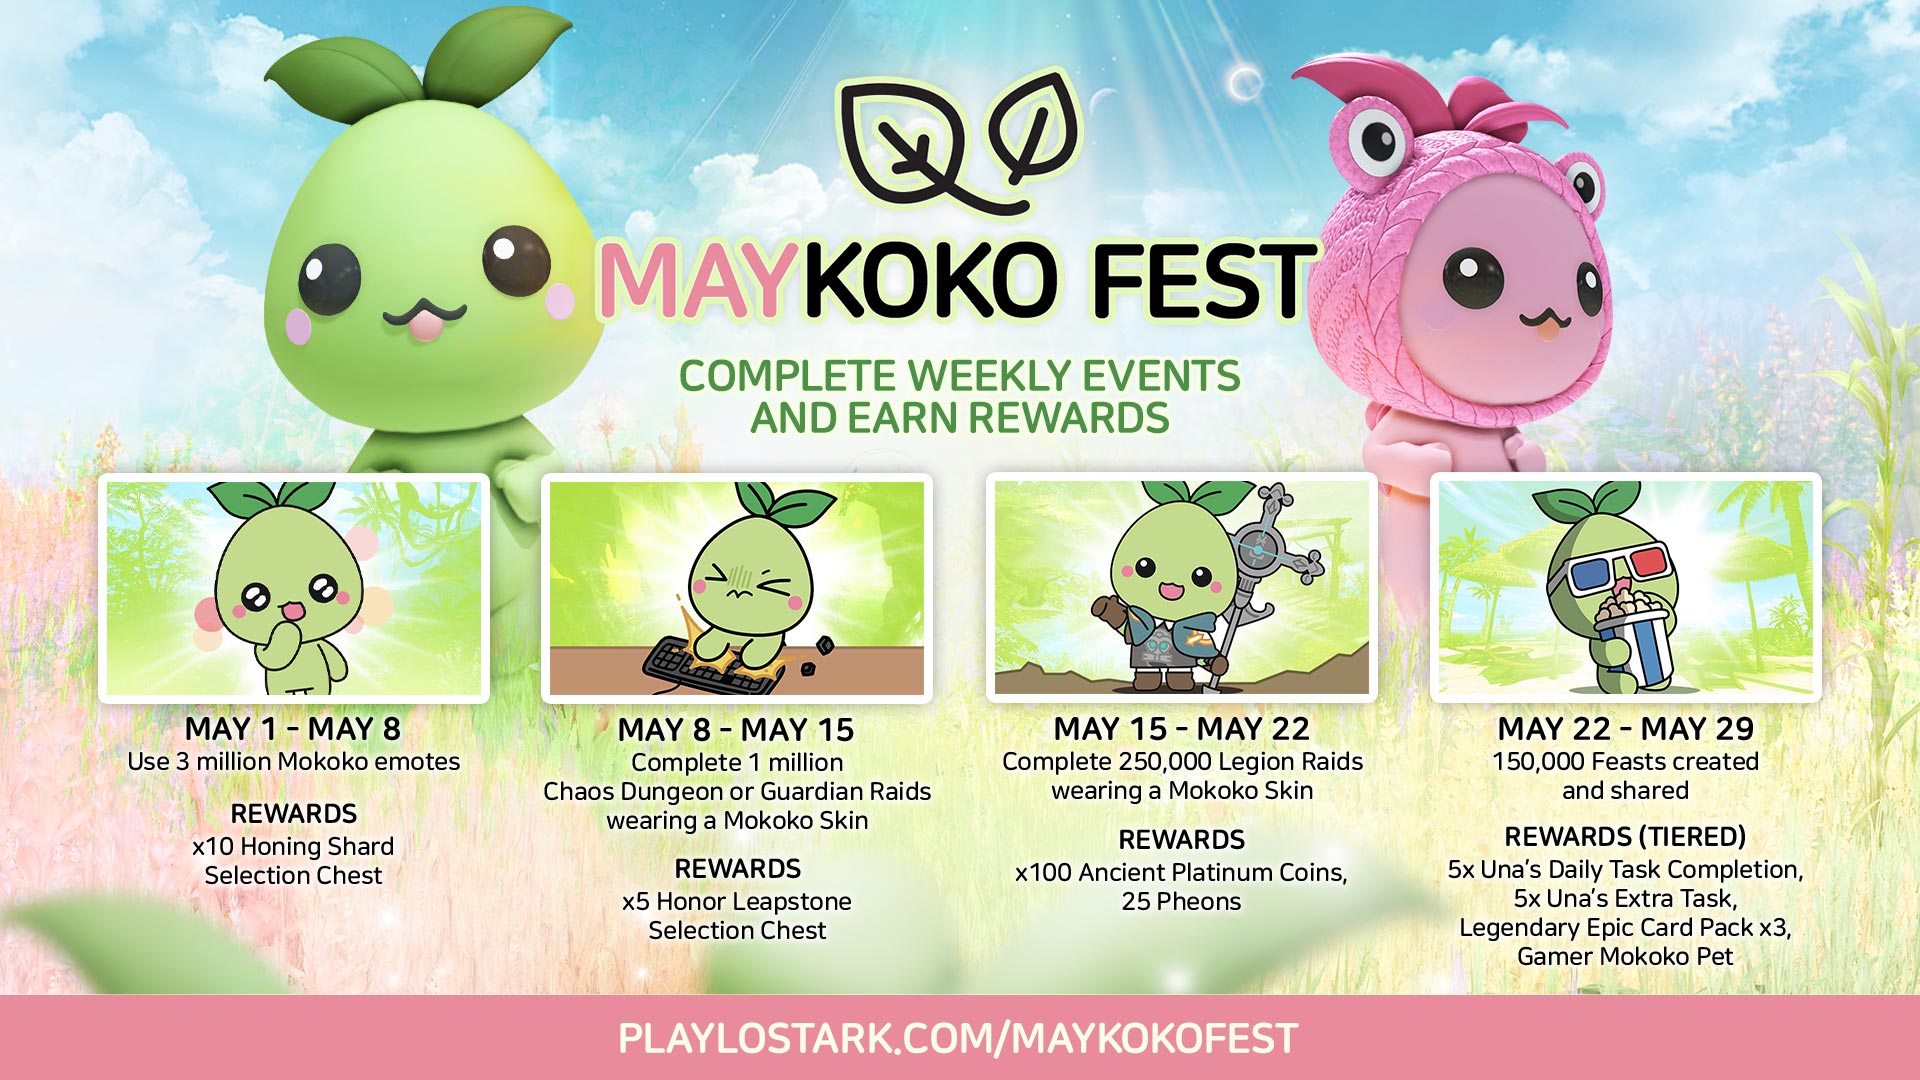 Maykoko Fest calendar for Lost Ark's event